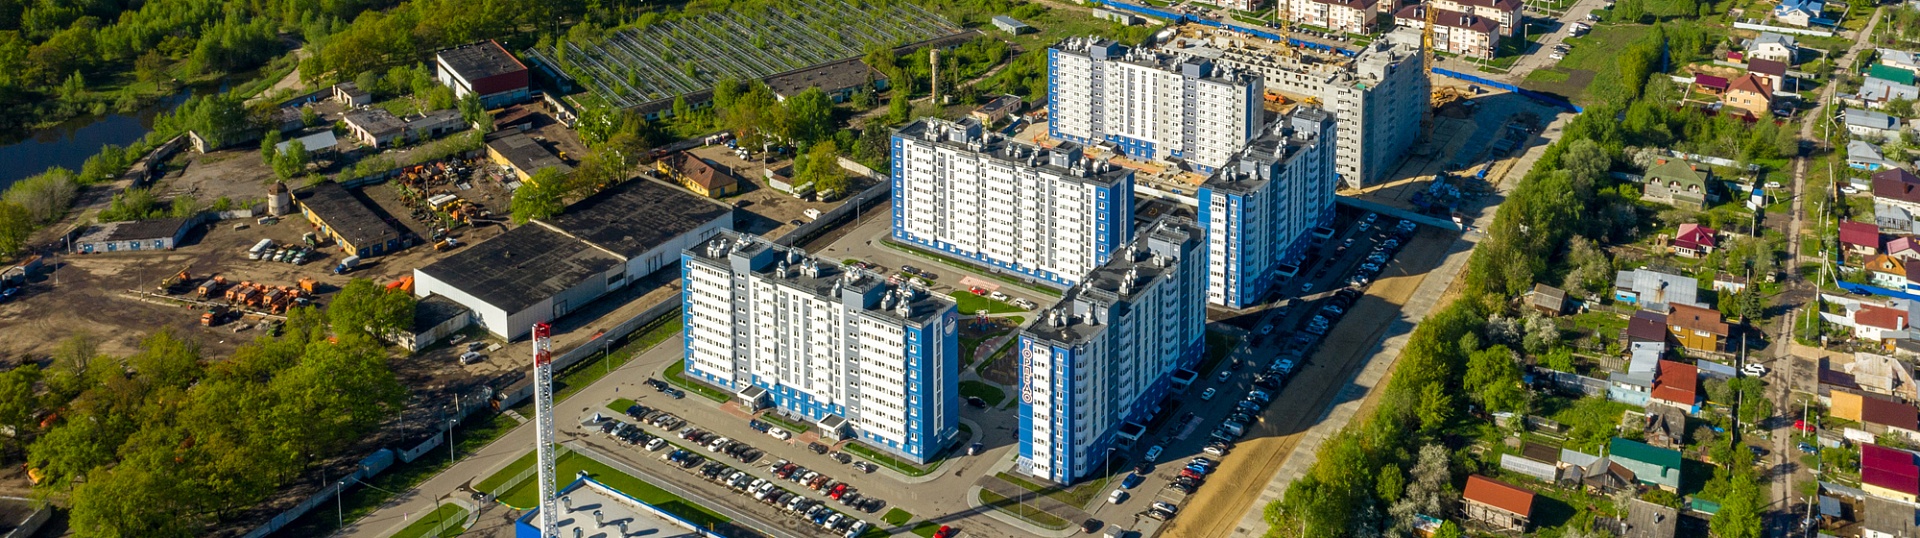 ЖК «Торпедо» признан лучшим инвестиционным проектом в сфере жилой недвижимости